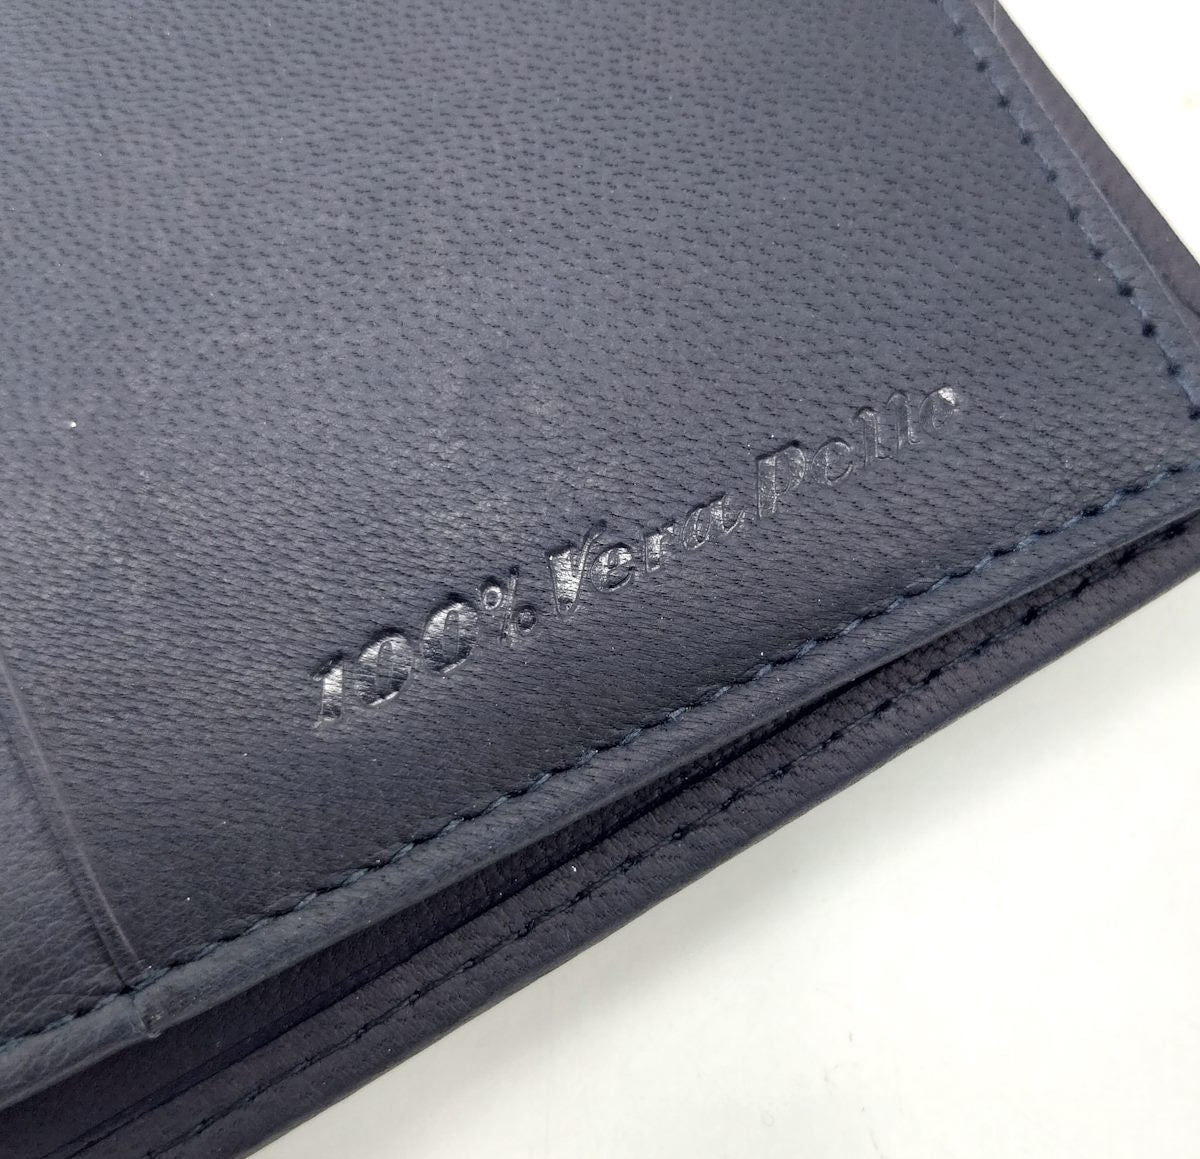 Genuine leather wallet, Armata di Mare, art. PDK380-4